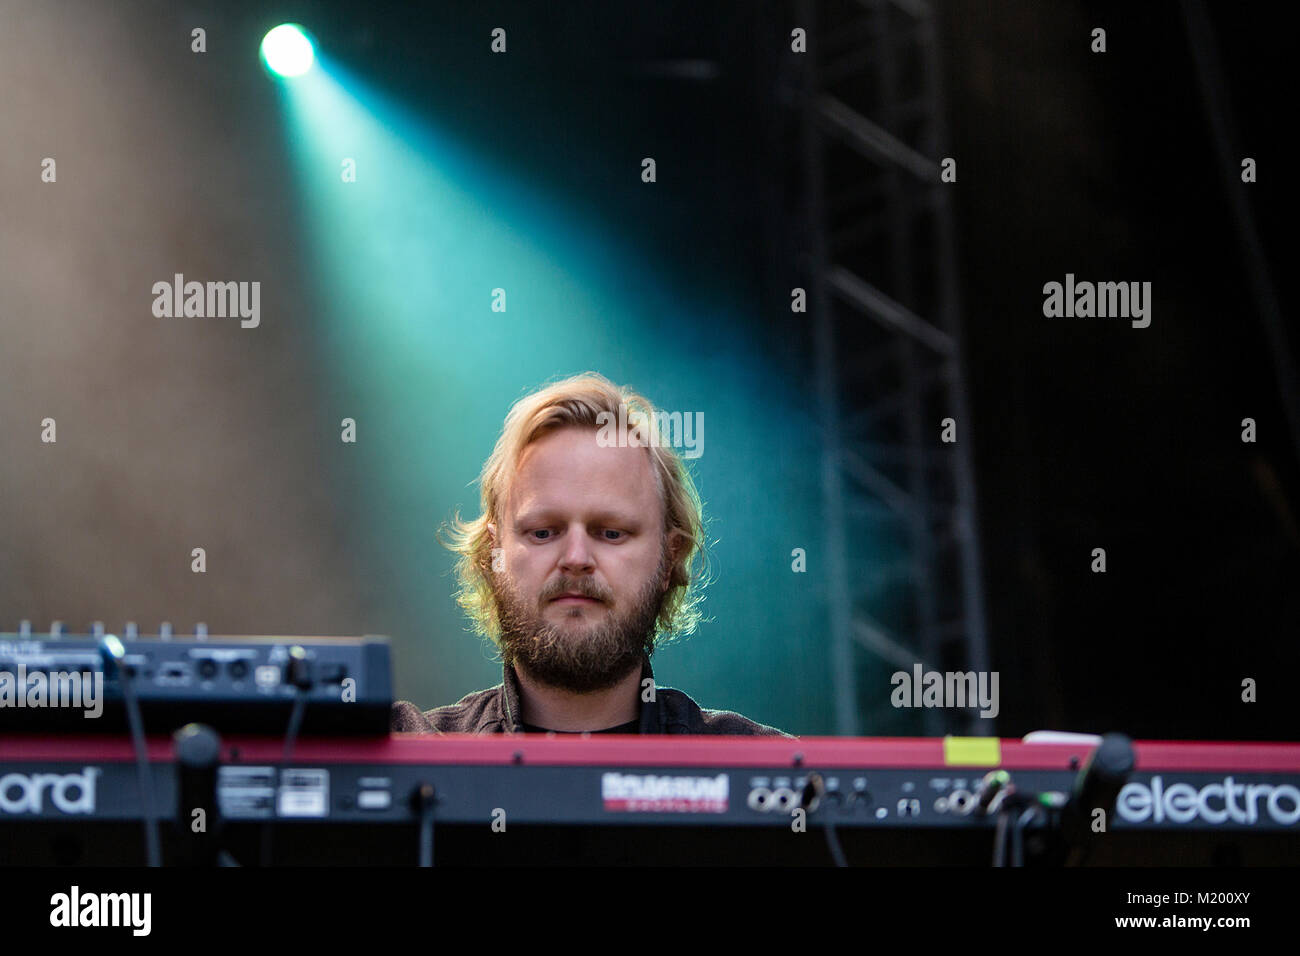 Die schwedische Punk Band Vånna Inget führt ein Live Konzert in der norwegischen Musik Festival Festidalen 2016. Hier Musiker Joel Nevrup wird gesehen, live auf der Bühne. Norwegen, 06/08 2016. Stockfoto